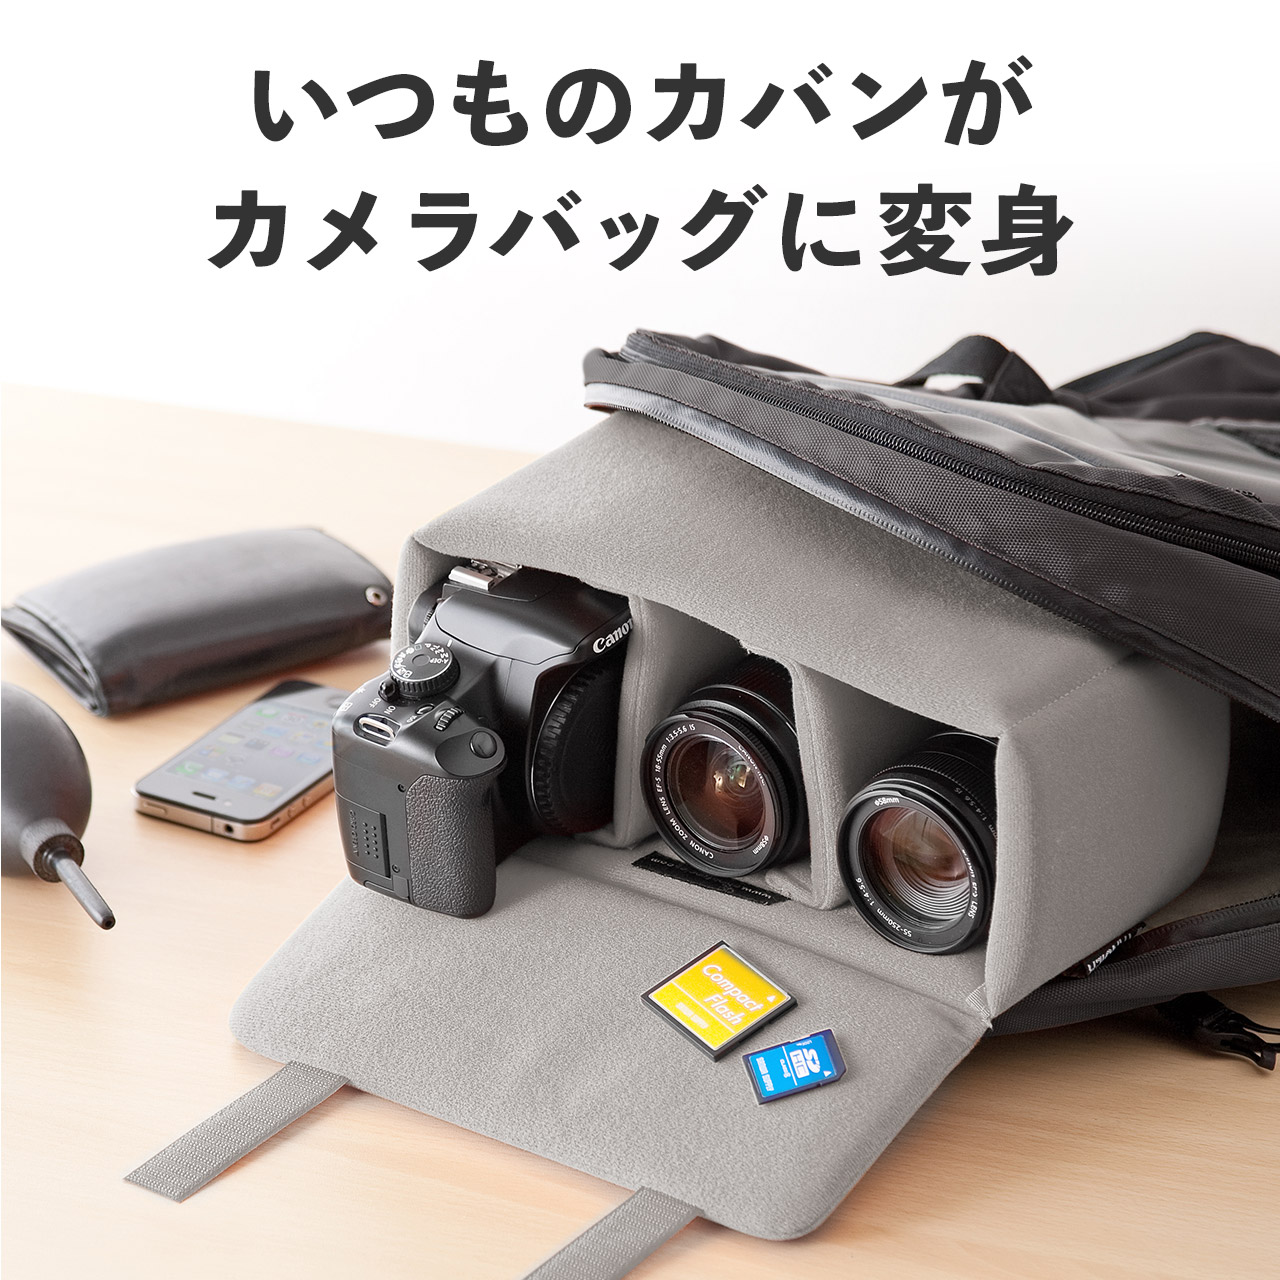 カメラインナーボックス Lサイズ ブラック ソフトクッションケース 200-BG019LBKの販売商品 通販ならサンワダイレクト